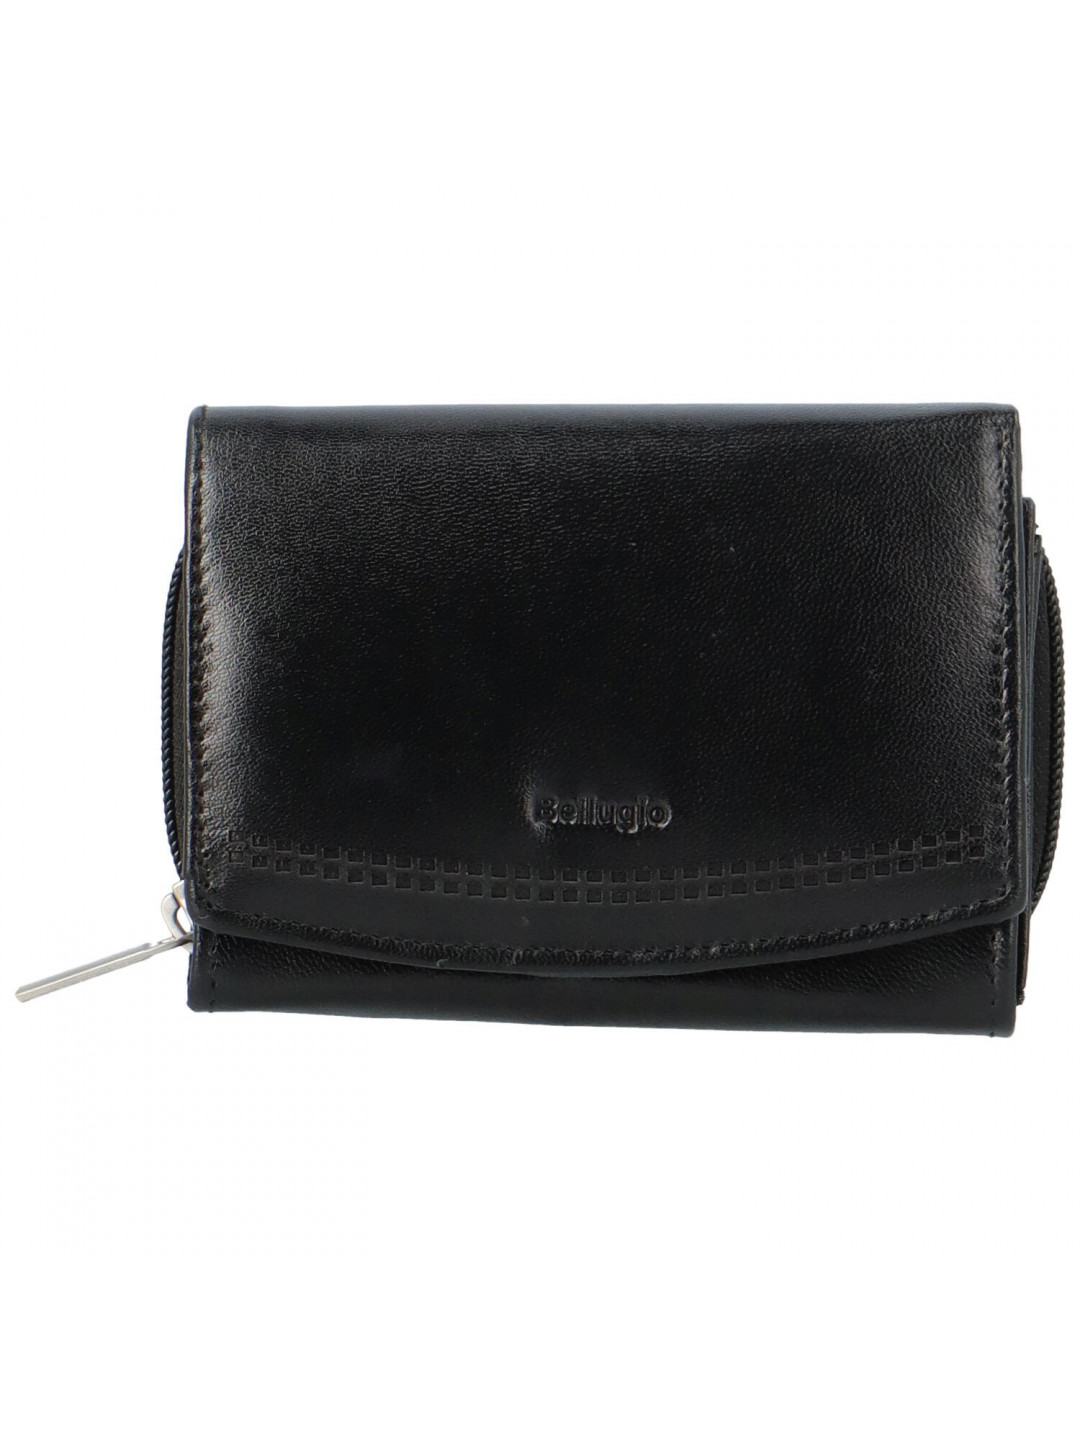 Dámská kožená peněženka černá – Bellugio Odetta